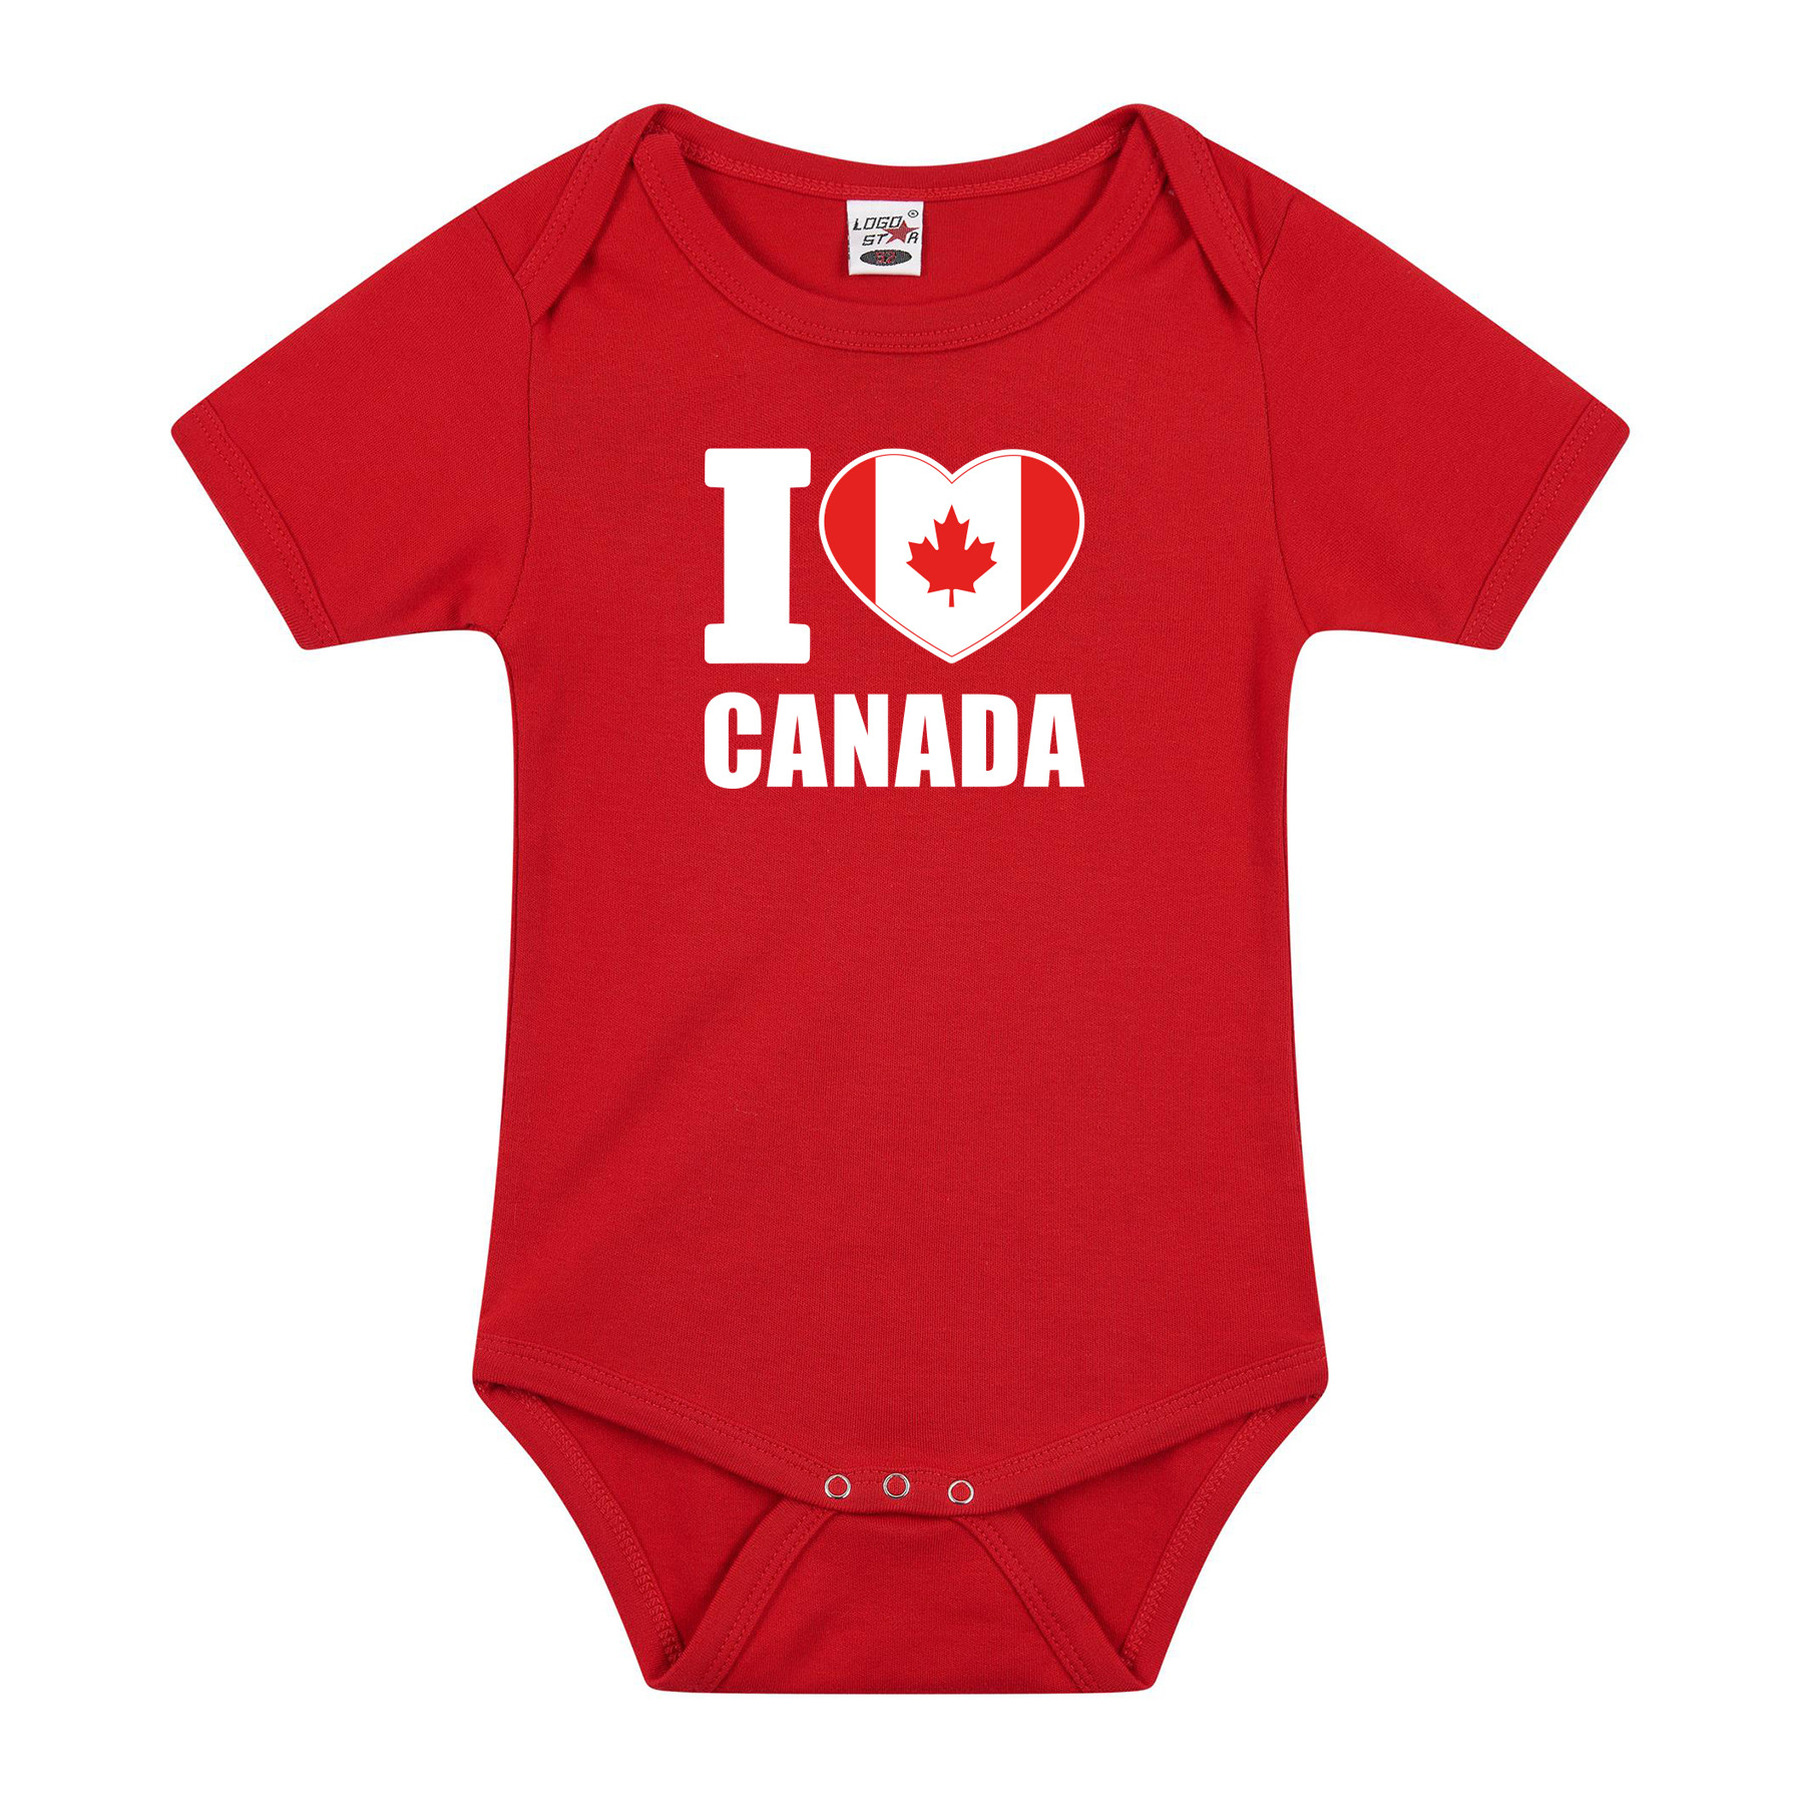 I love Canada baby rompertje rood jongen-meisje